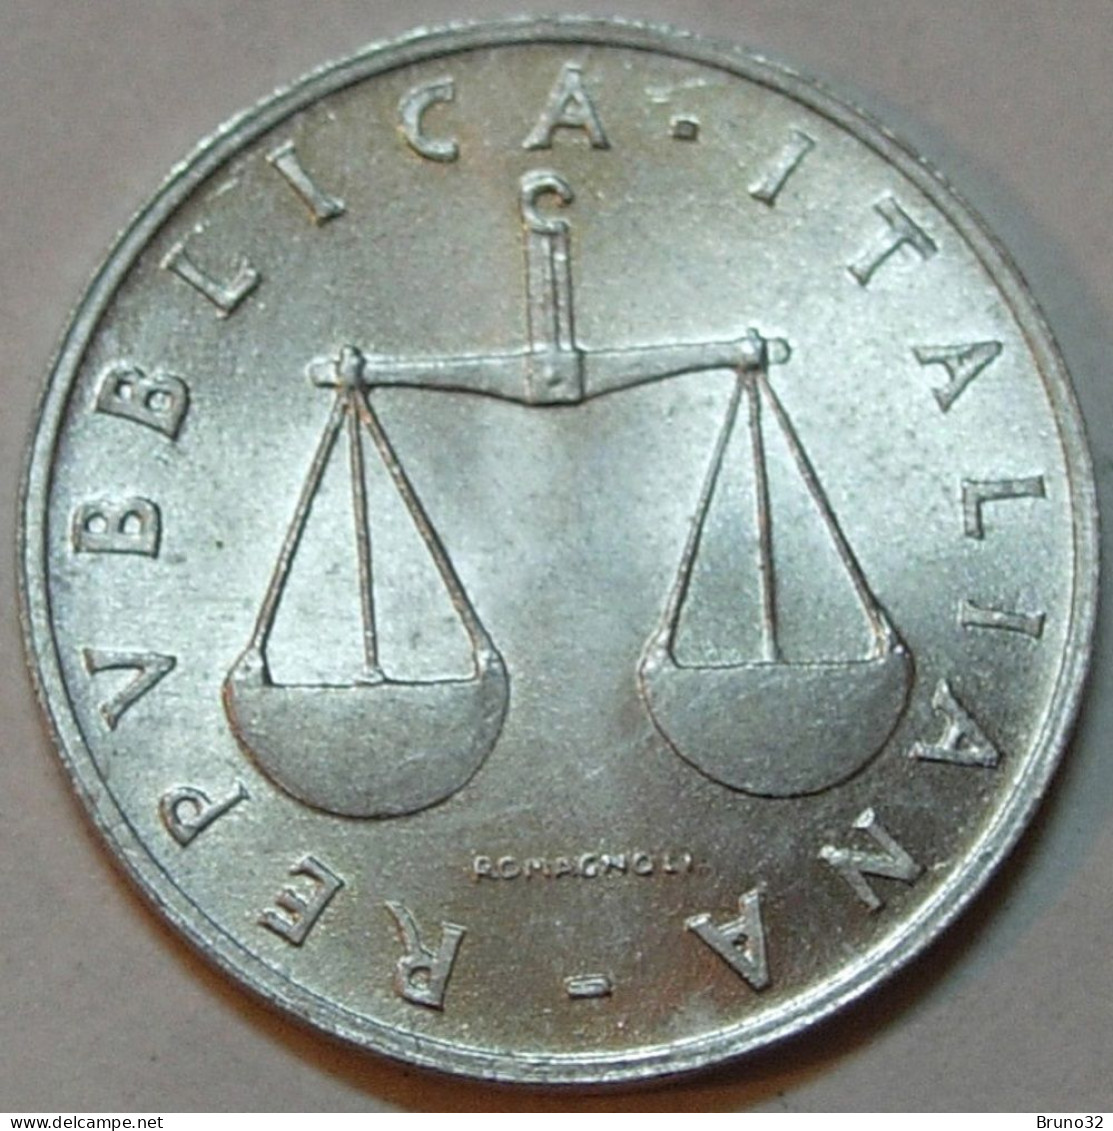 ITALIA - Lire 1 1970 - FDC/Unc Da Rotolino/from Roll 1 Moneta/1 Coin - 1 Lira